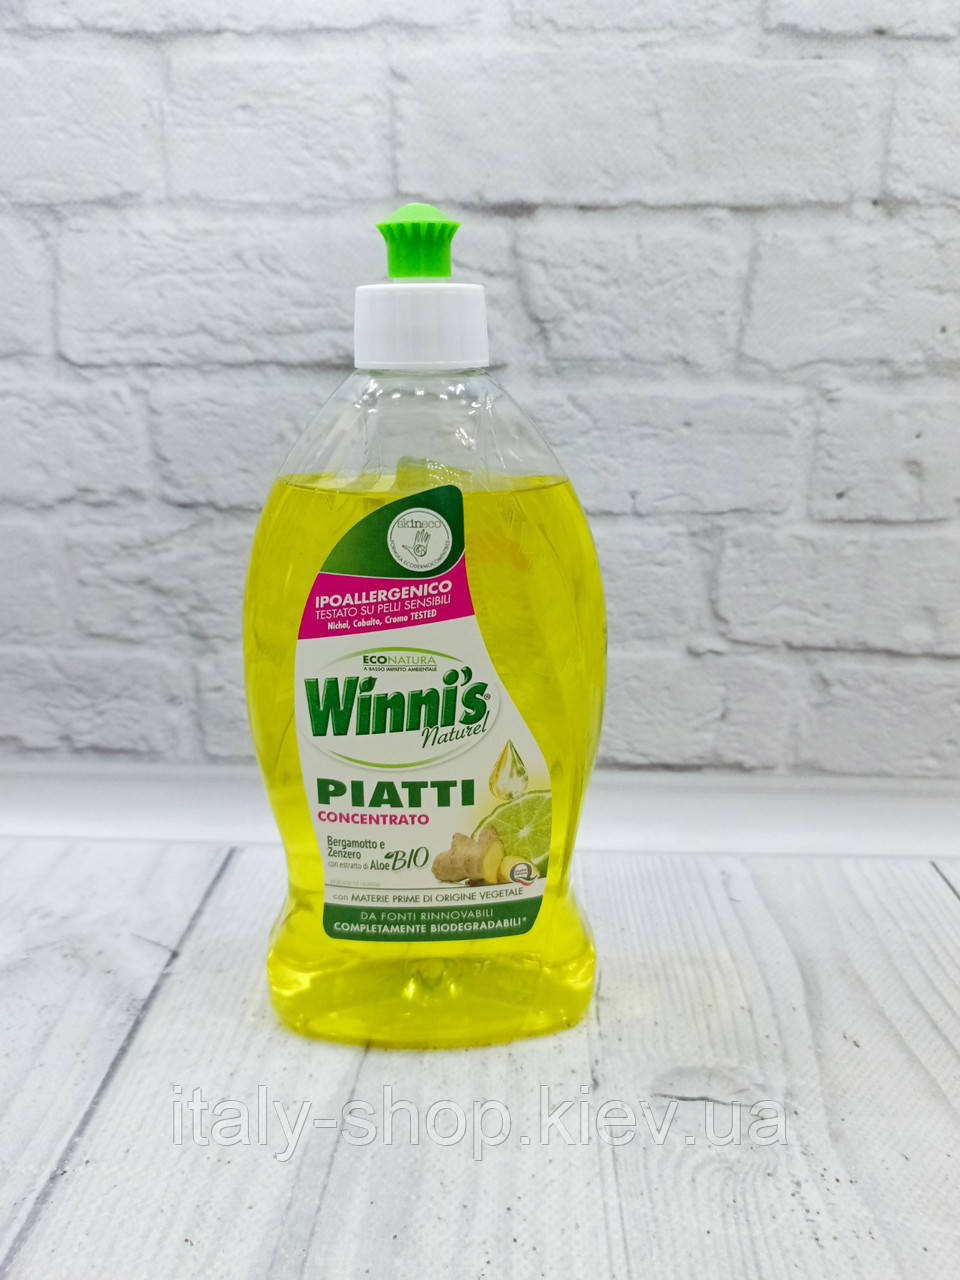 Winni's - Гіпоалергенний засіб для миття посуду концентрат, органіка, в асортименті 500 мл Італія